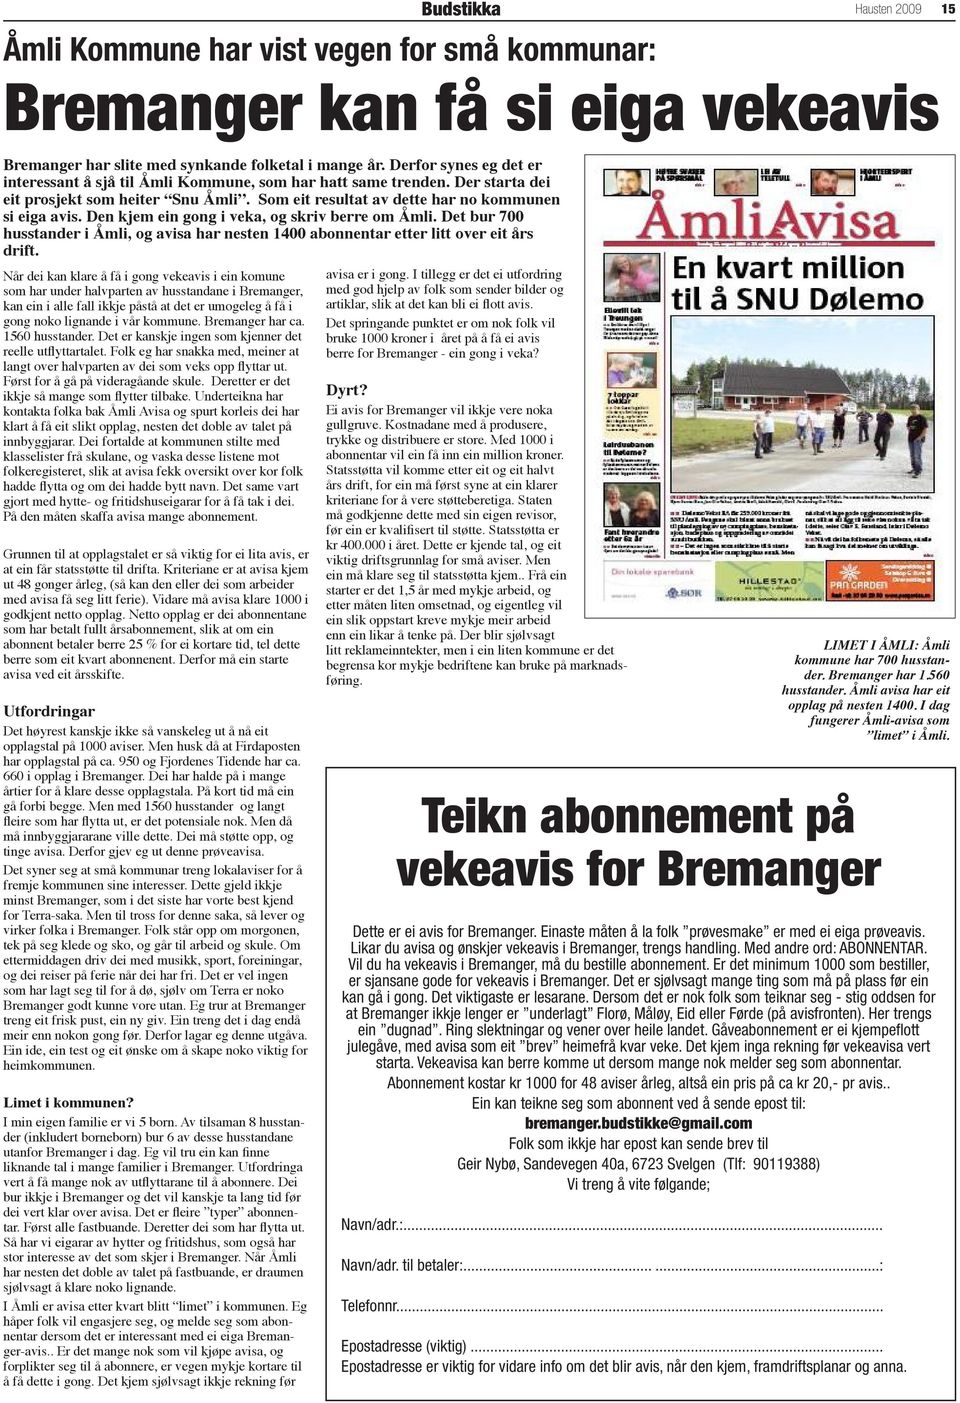 Den kjem ein gong i veka, og skriv berre om Åmli. Det bur 700 husstander i Åmli, og avisa har nesten 1400 abonnentar etter litt over eit års drift.